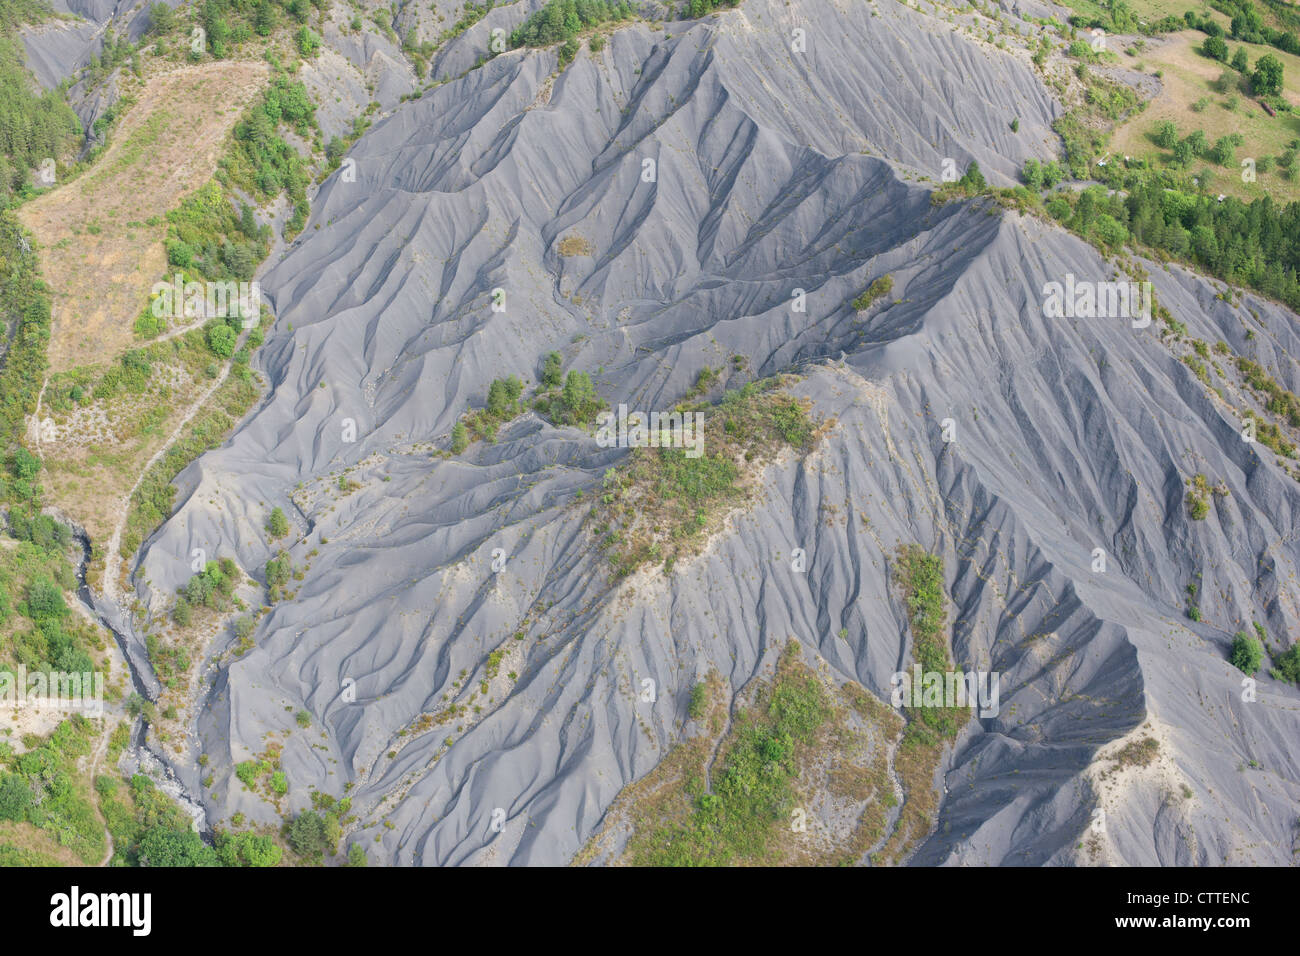 LUFTAUFNAHME. Badlands aus Sedimentgestein, das aus schwarzem Mergel (Ton und Kalk) besteht. La-Robine-sur-Galabre, Alpes-de-Haute-Provence, Frankreich. Stockfoto